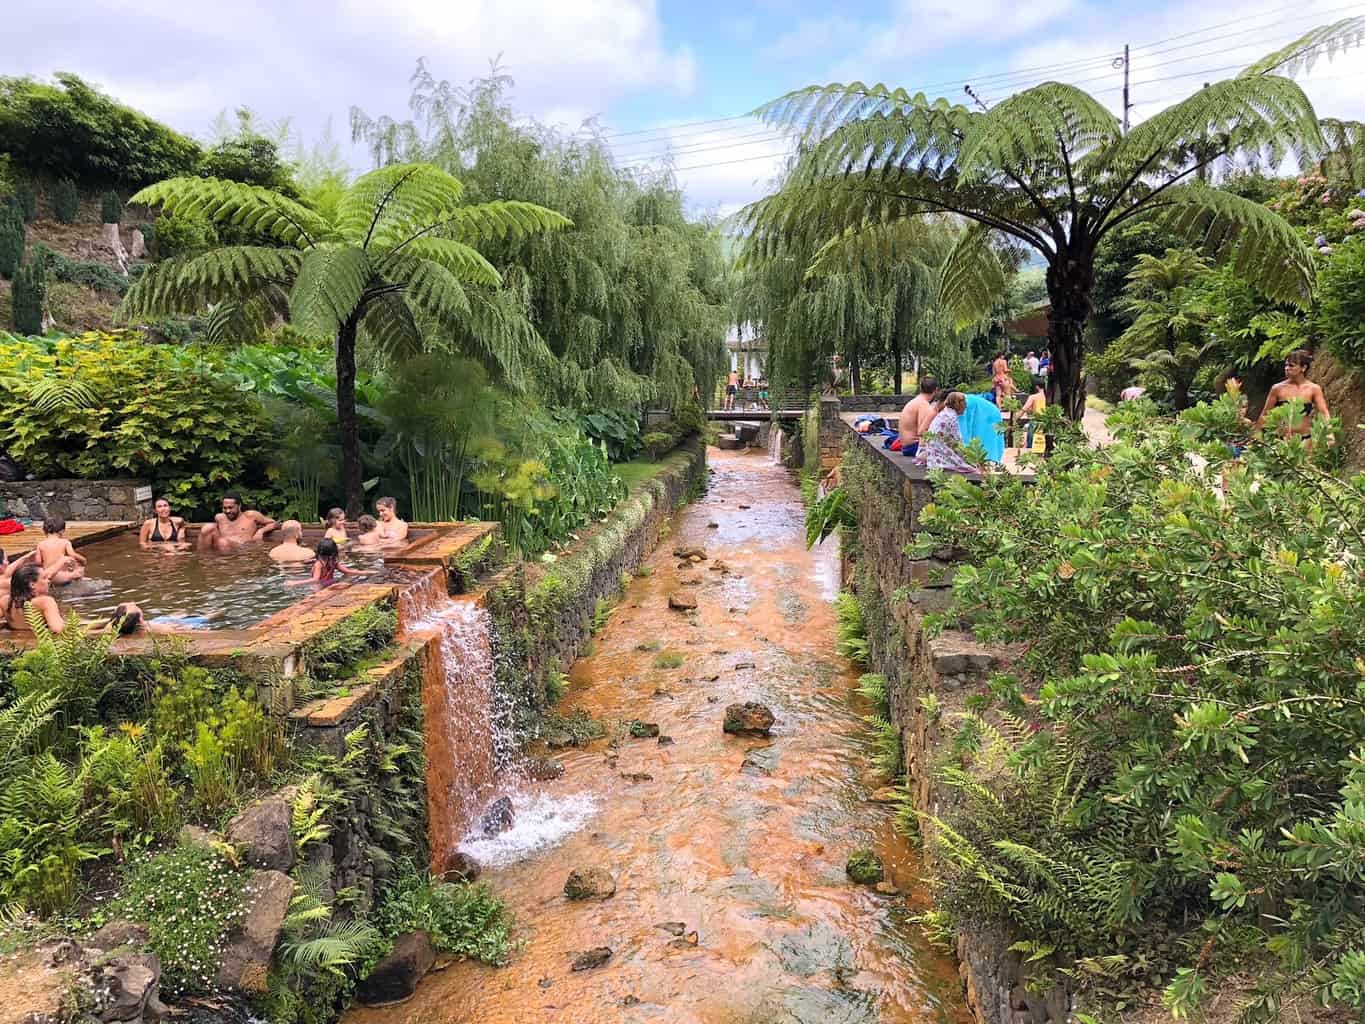 Visiting Poca Da Dona Beija Relaxing Thermal Baths Of Furnas Triptins